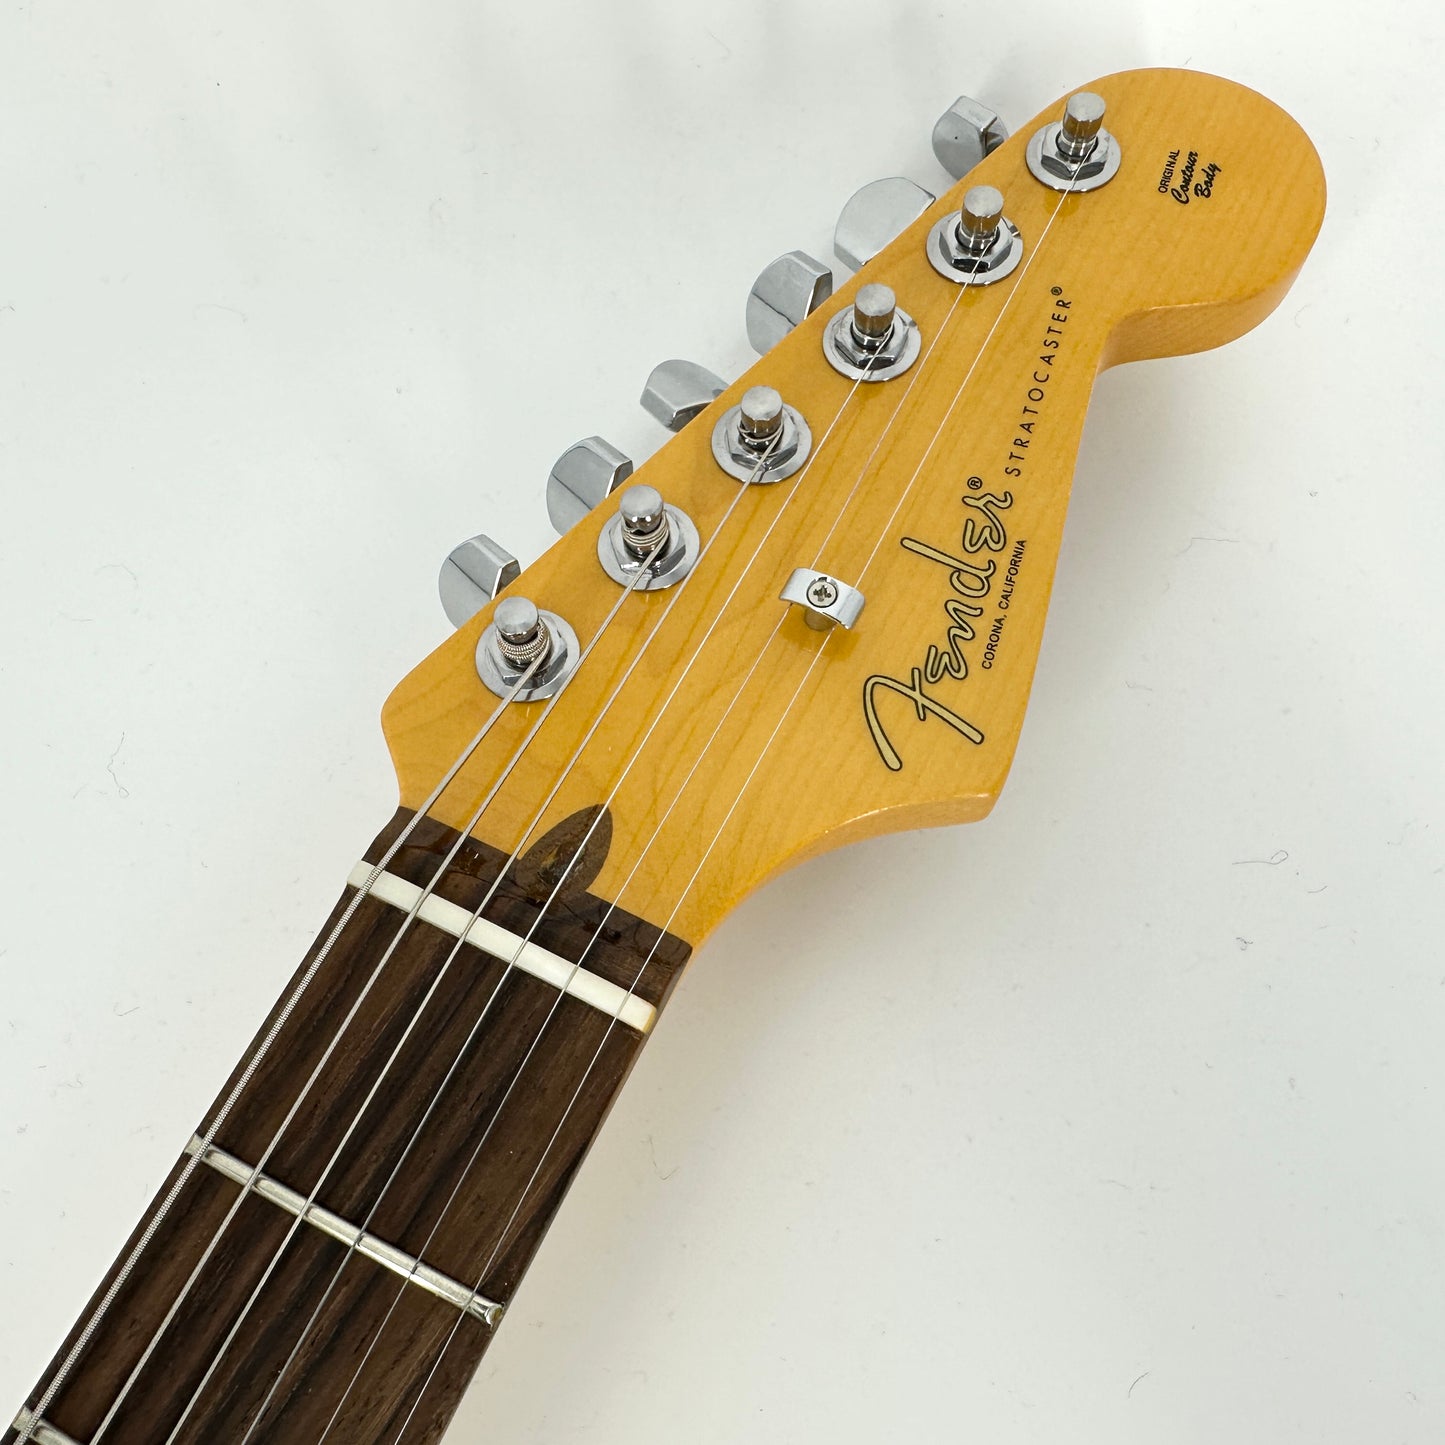 2022 Fender American Professional II Stratocaster – Miami Blue